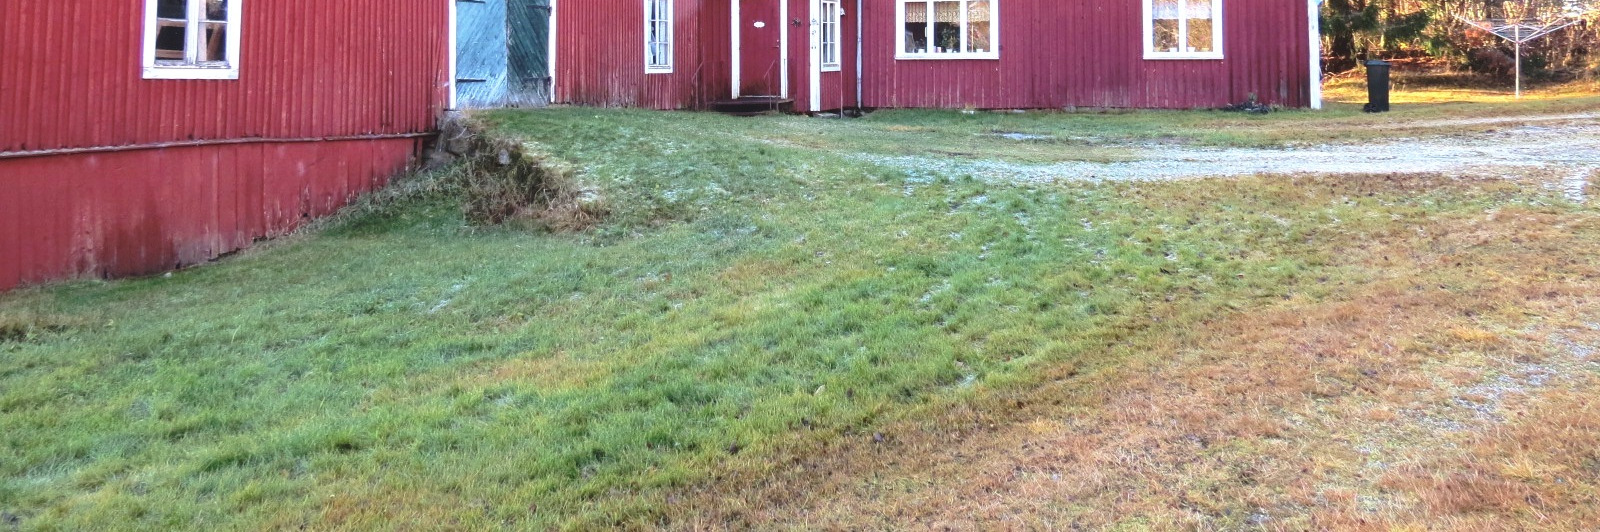 Gård i Gryttje, Gnarp i Nordanstig Gården omfattar 7,2 hektar varav inägomark